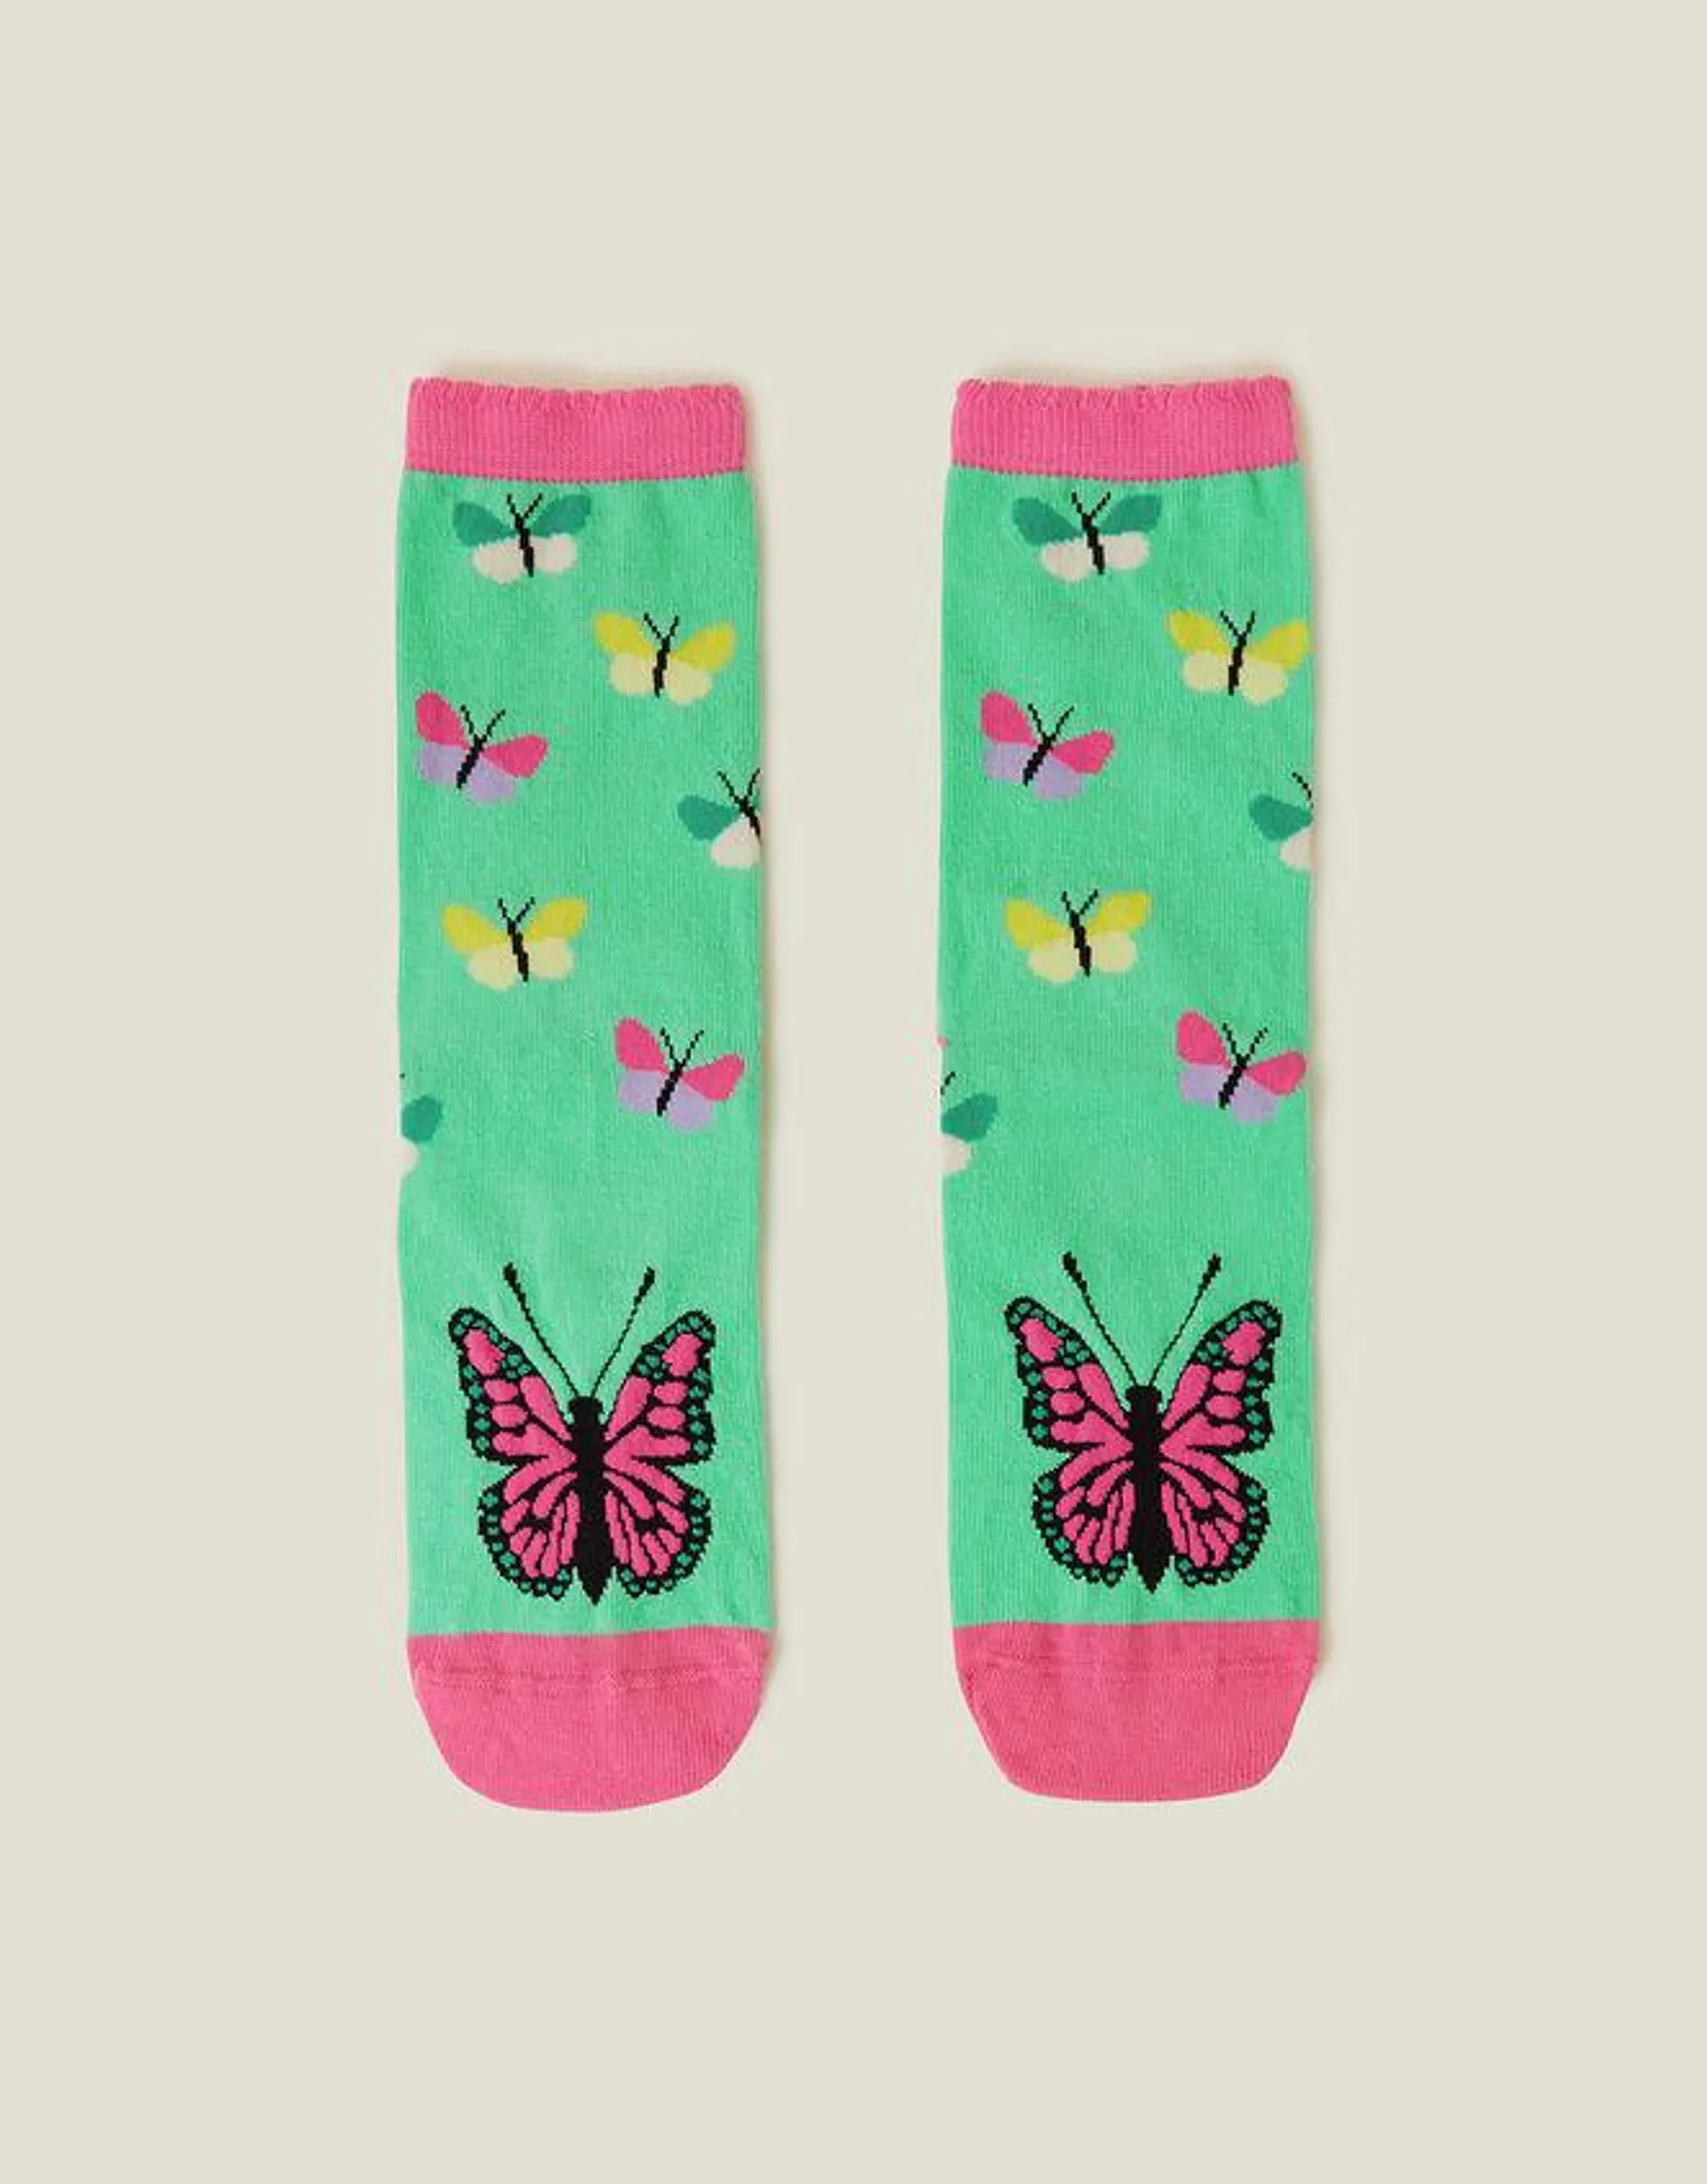 Butterflies in Love Socks